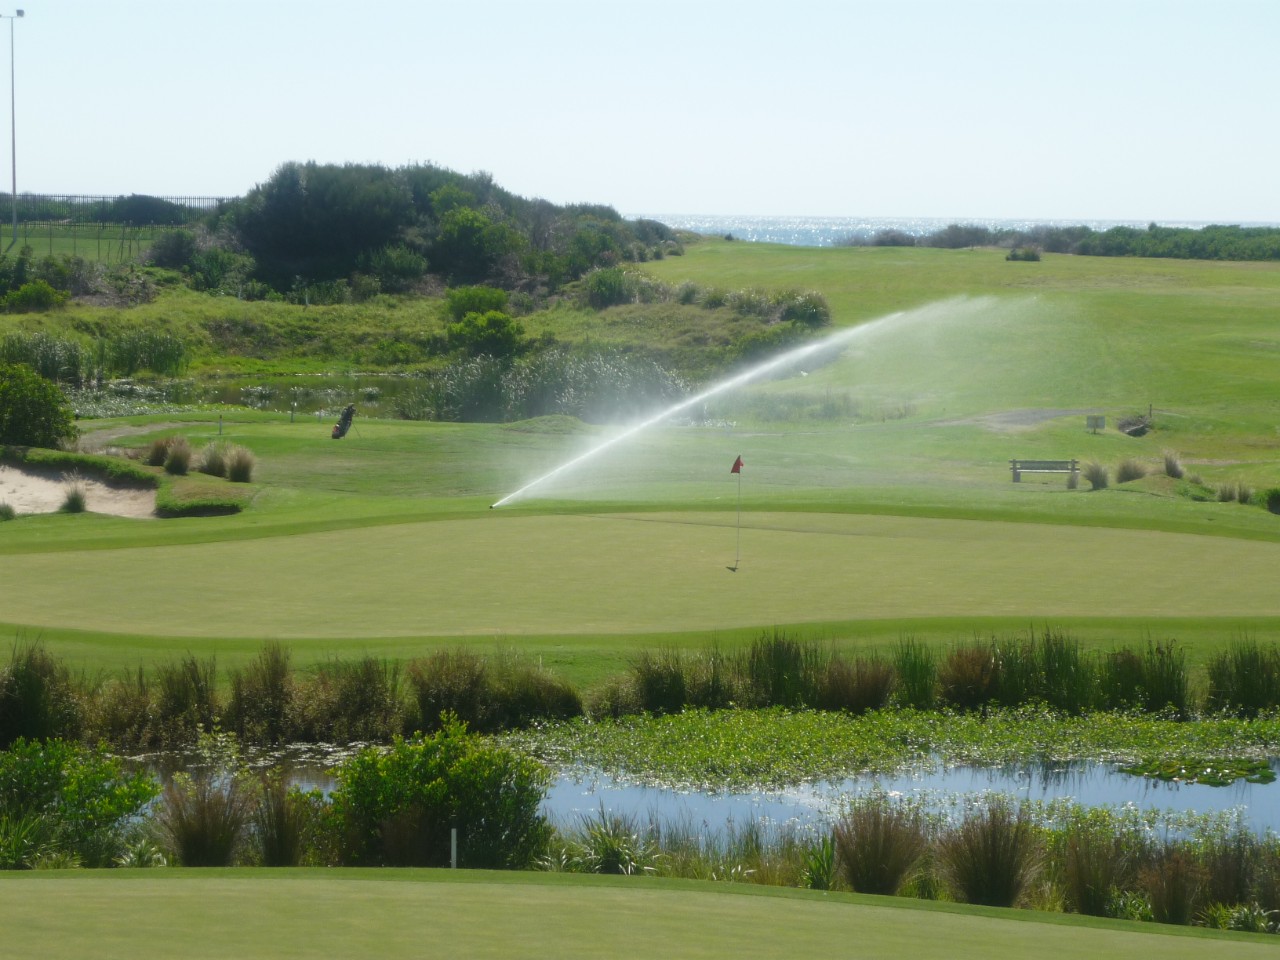 A sprinkler on a golf course